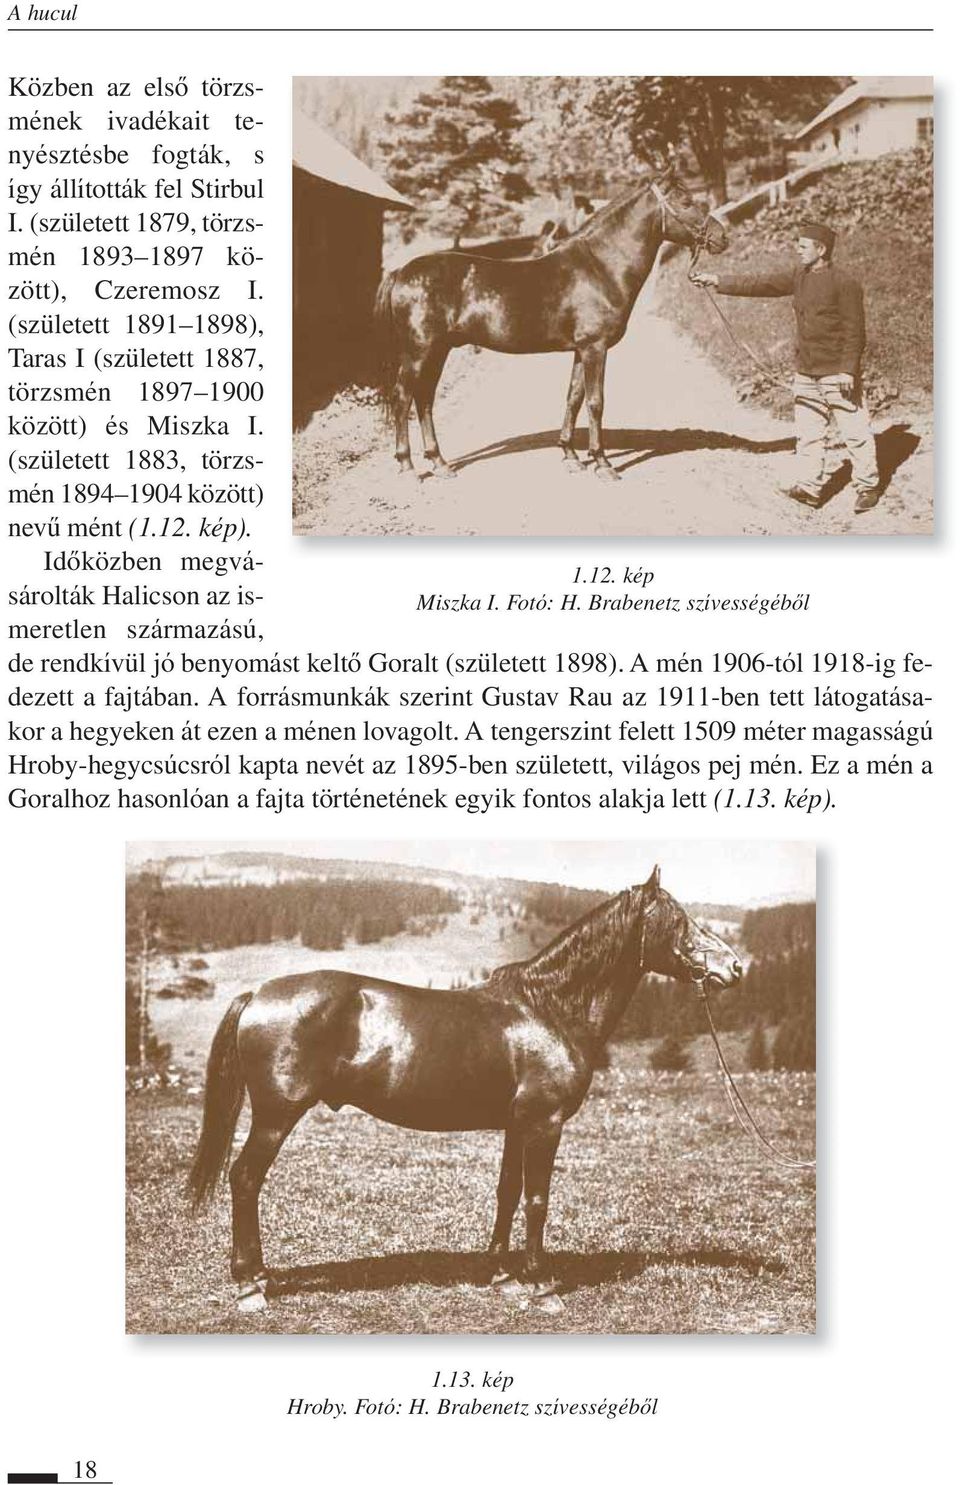 Idôközben meg vásá rol ták Hali cson az ismeretlen szár ma zású, 1.12. kép Miszka I. Fotó: H. Brabenetz szívességébôl de rendkívül jó benyomást keltô Goralt (született 1898).